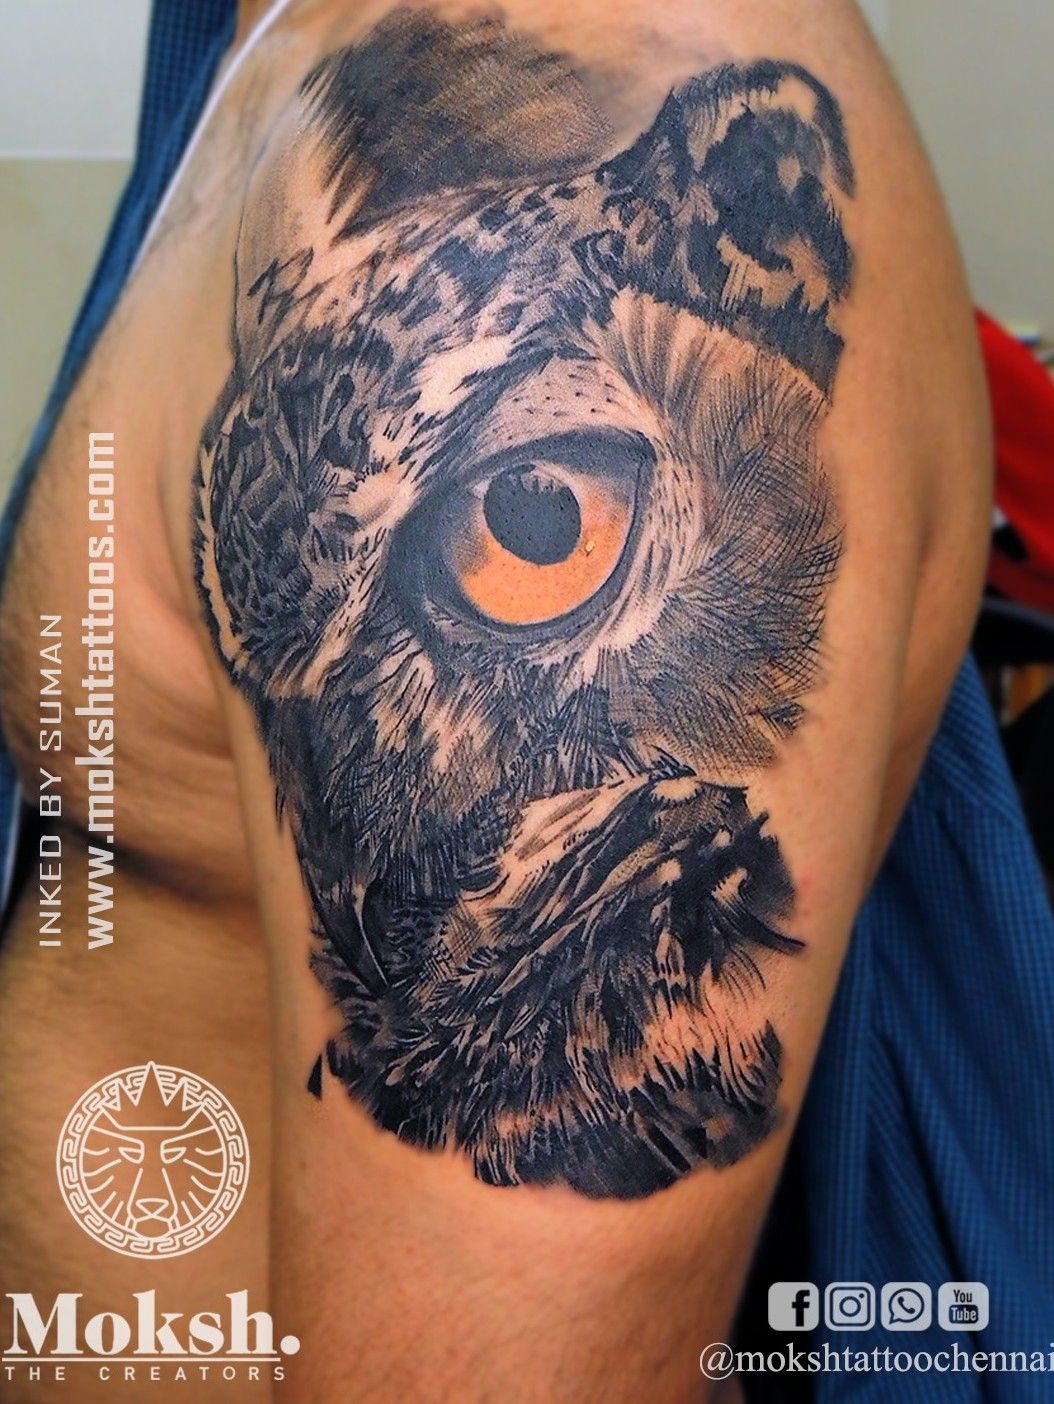 dedicated😘 #tattooooo... - Prachi Tattoo Studio, Kotkapura | Facebook